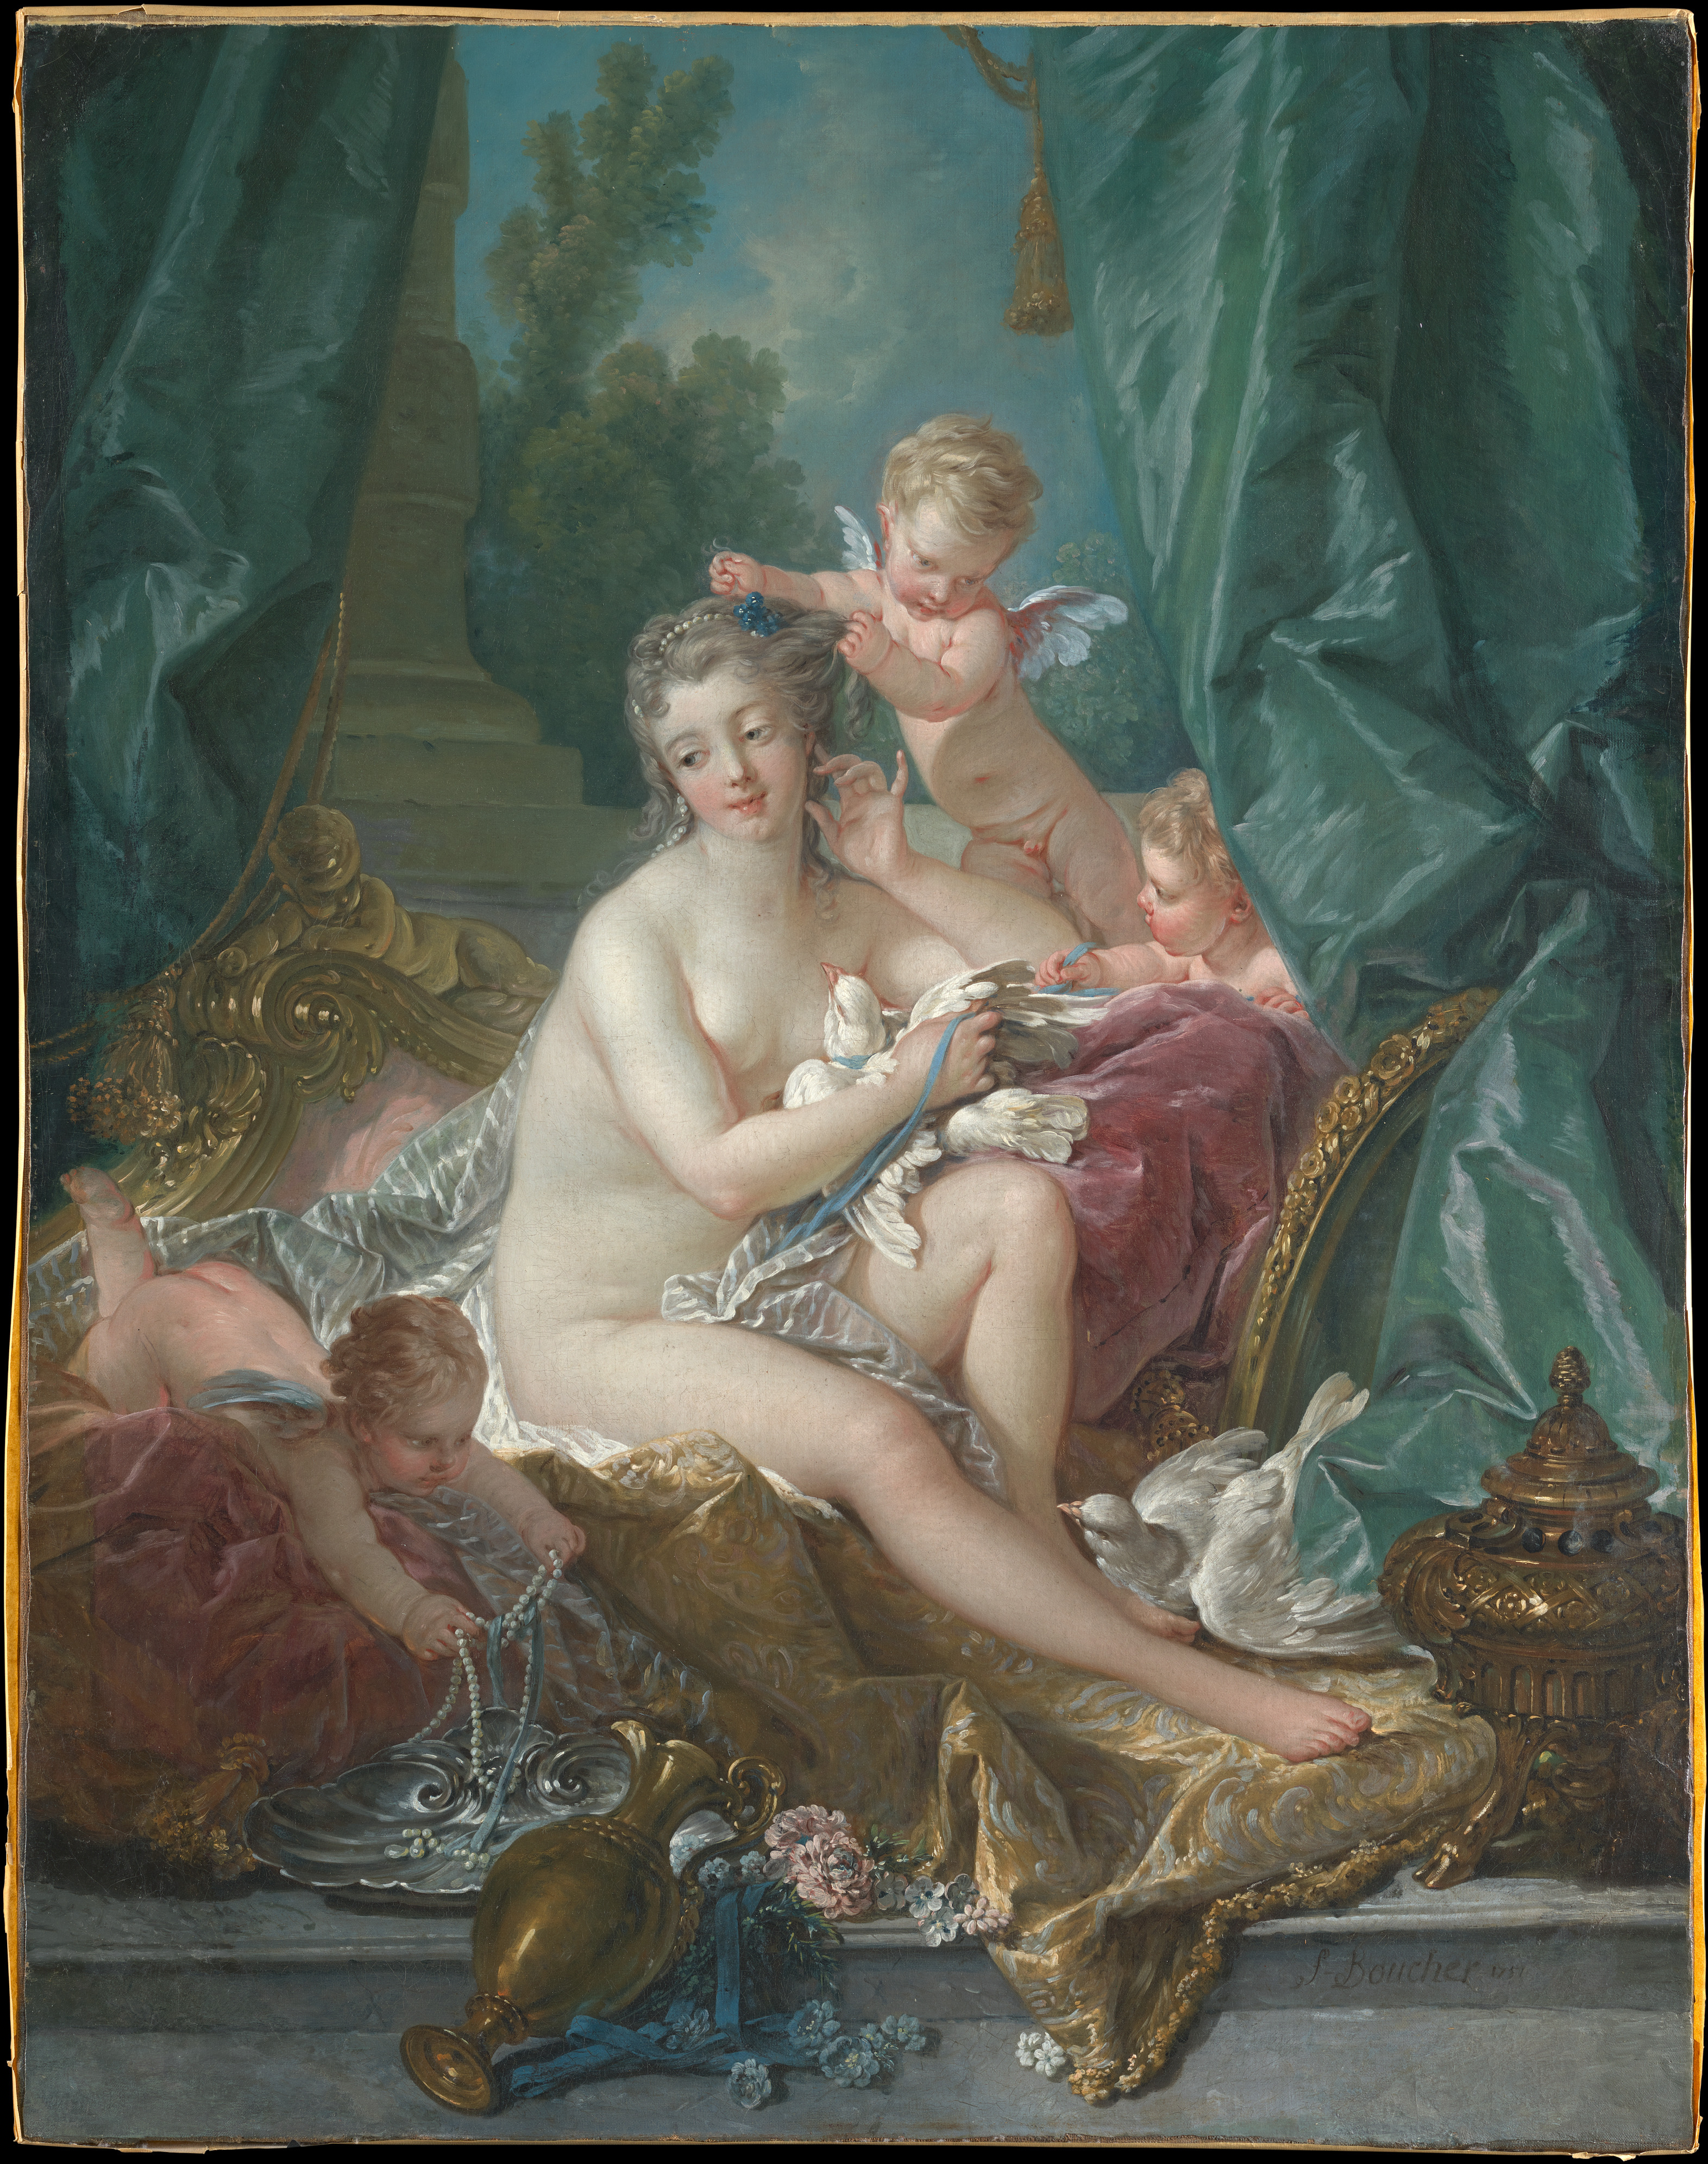 La Toilette de Venus by Francois Boucher - 1751 - 108.3 x 85.1 cm Metropolitan Museum of Art